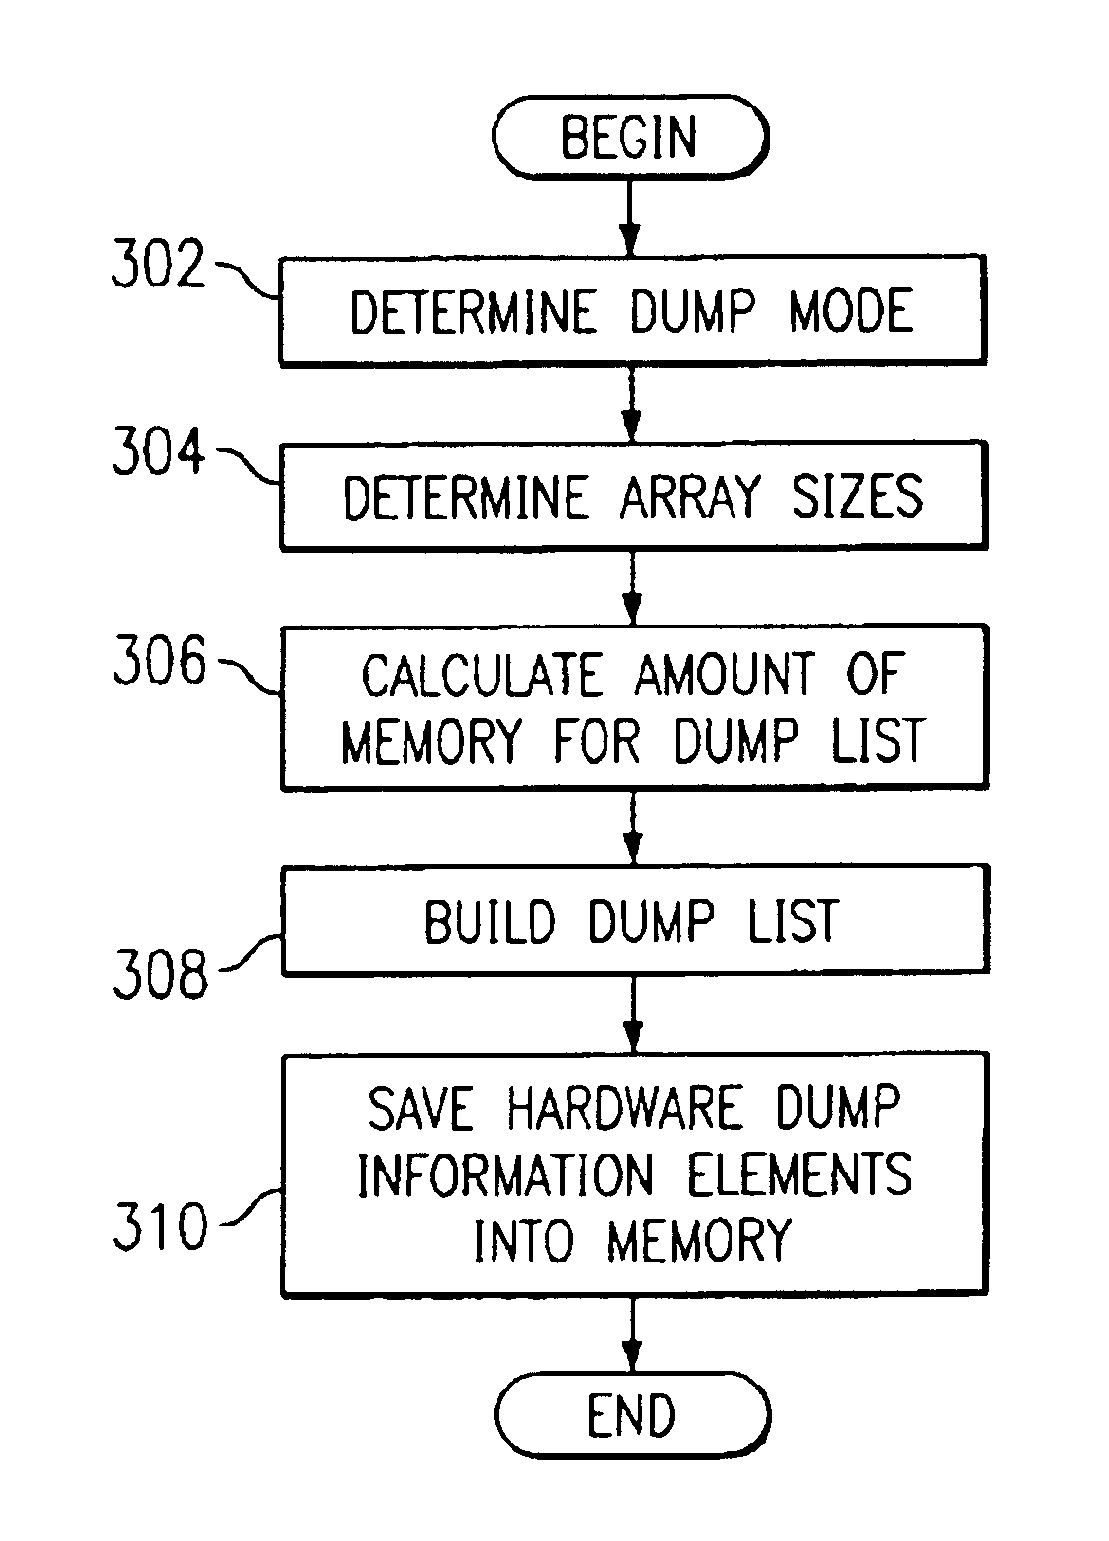 Dynamic sizing logic for dump list generation